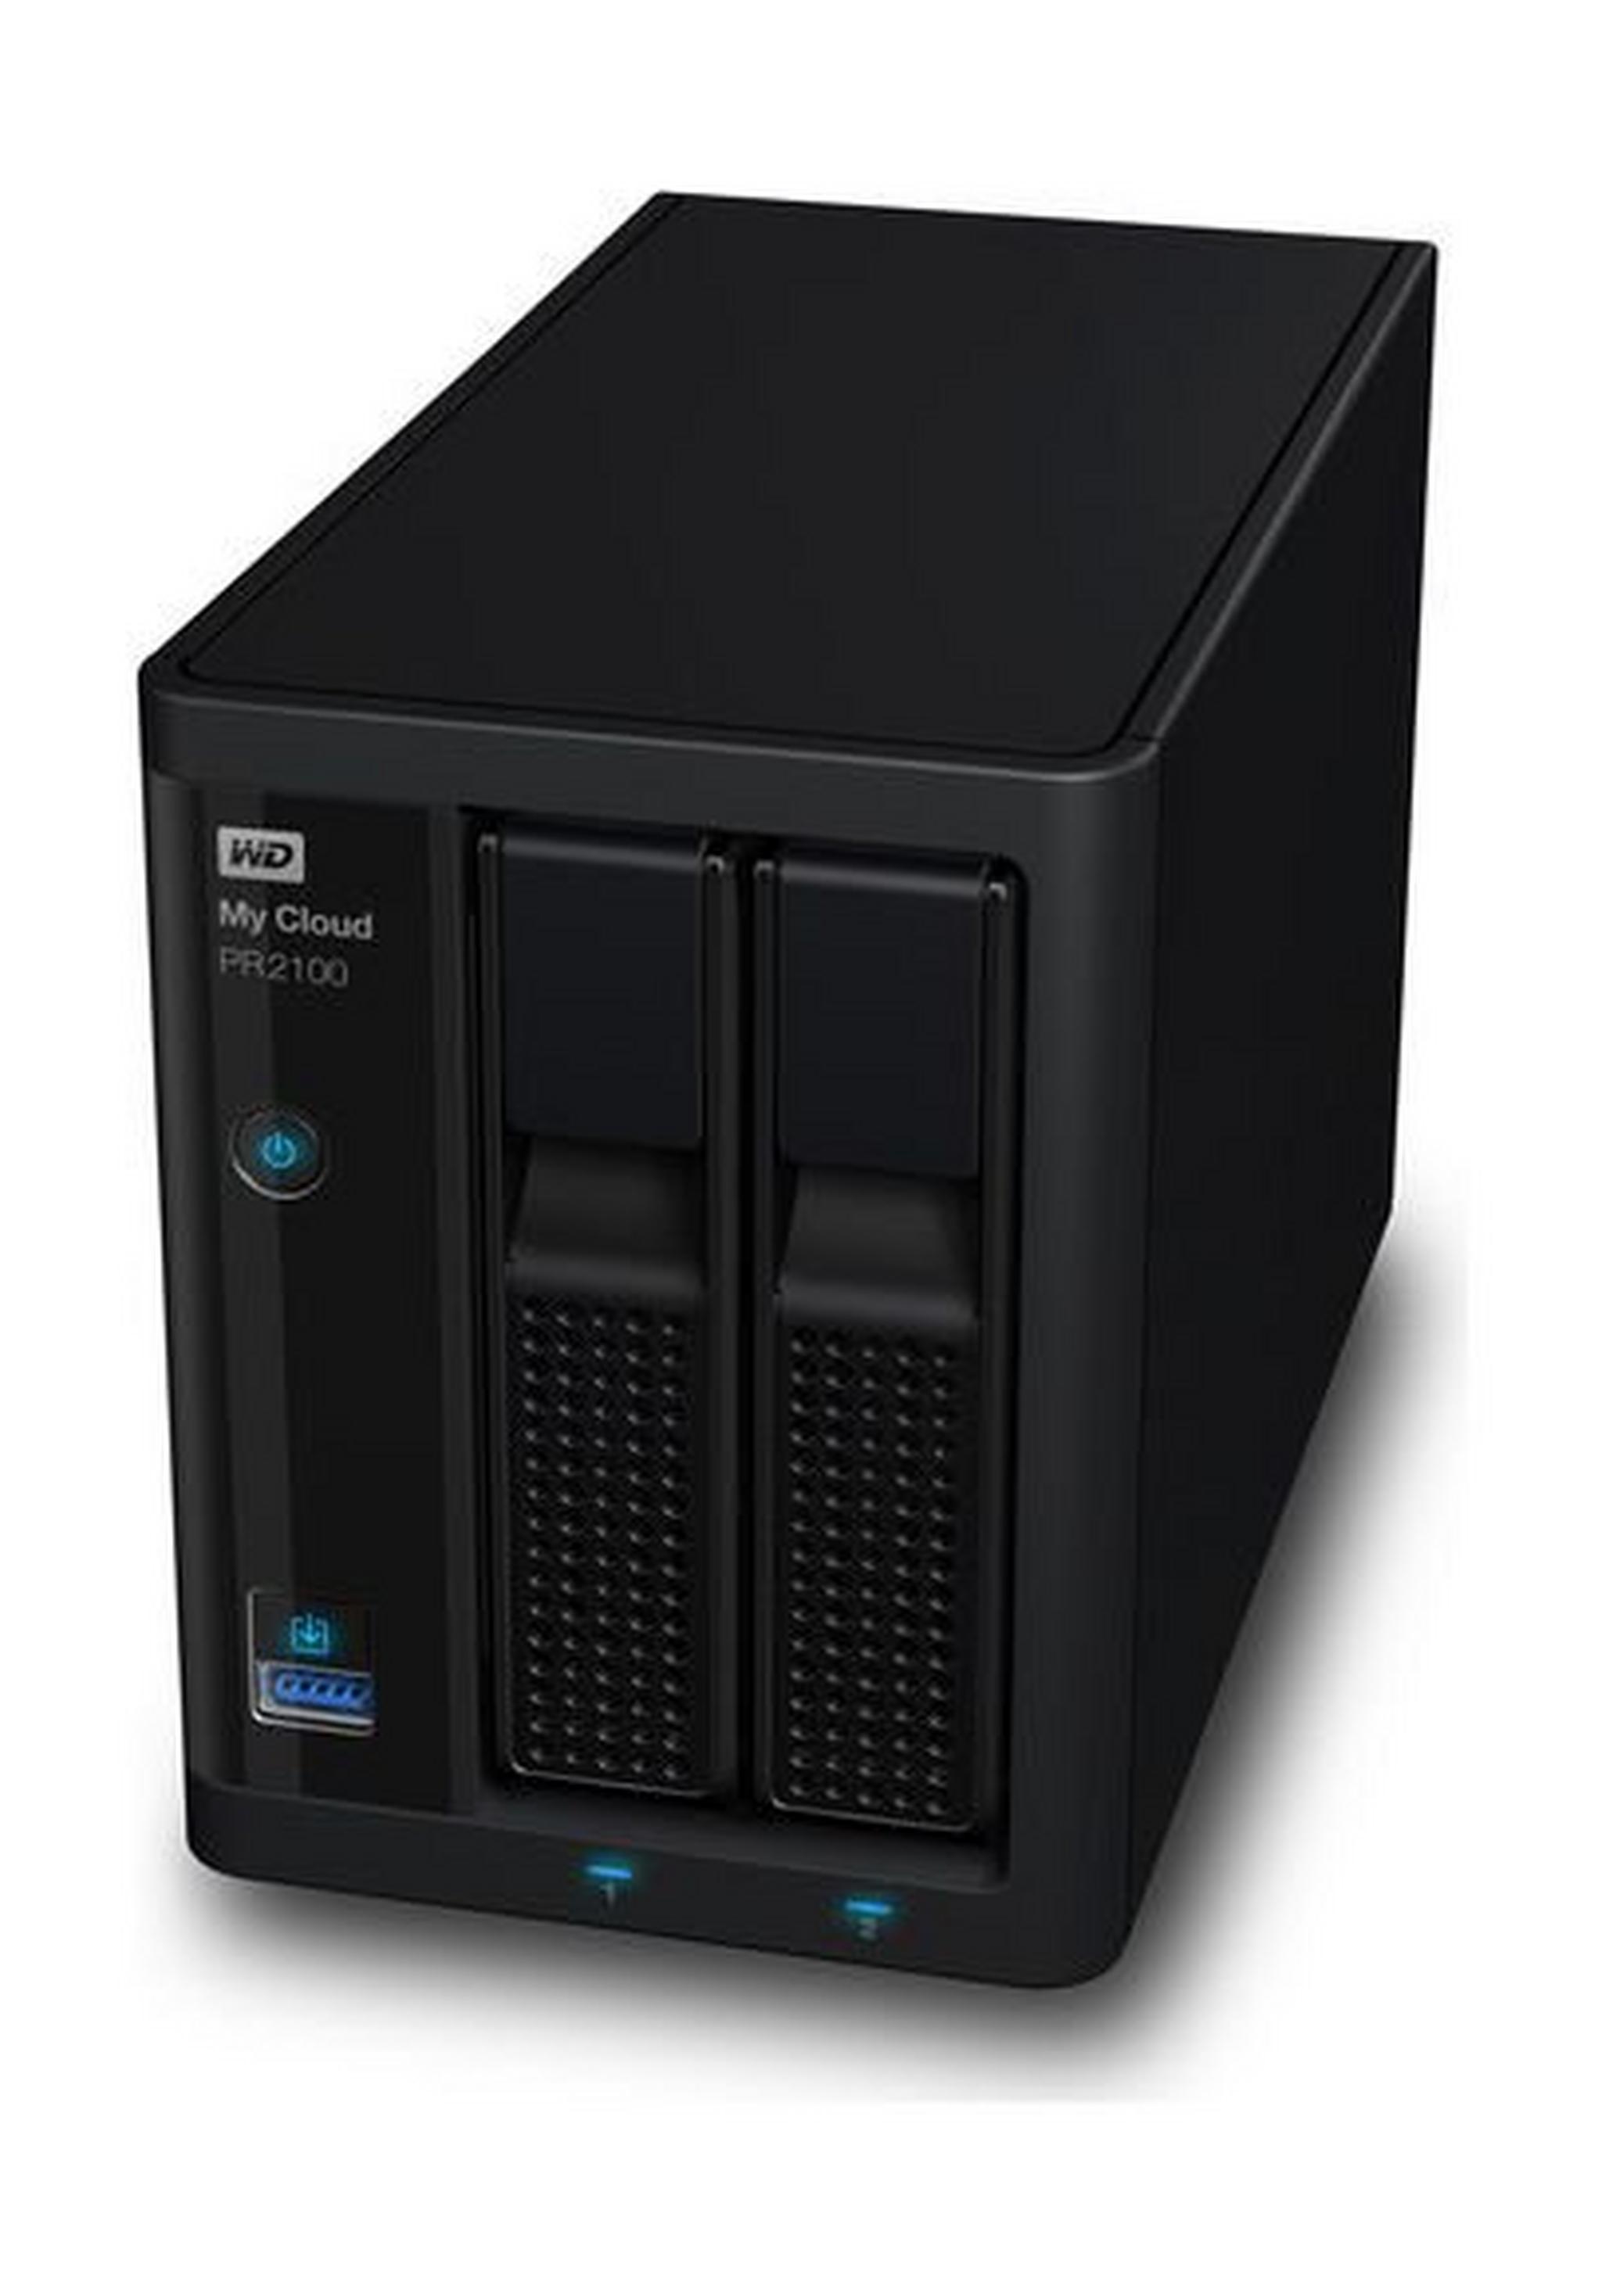 وحدة تخزين للشبكات ماي كلاود بي آر٢١٠٠ بتخزين كلاود من ويسترن ديجيتال – ٢ منفذ قرص صلب سعة ١٢ تيرا بايت (WDBBCL0120NBK)